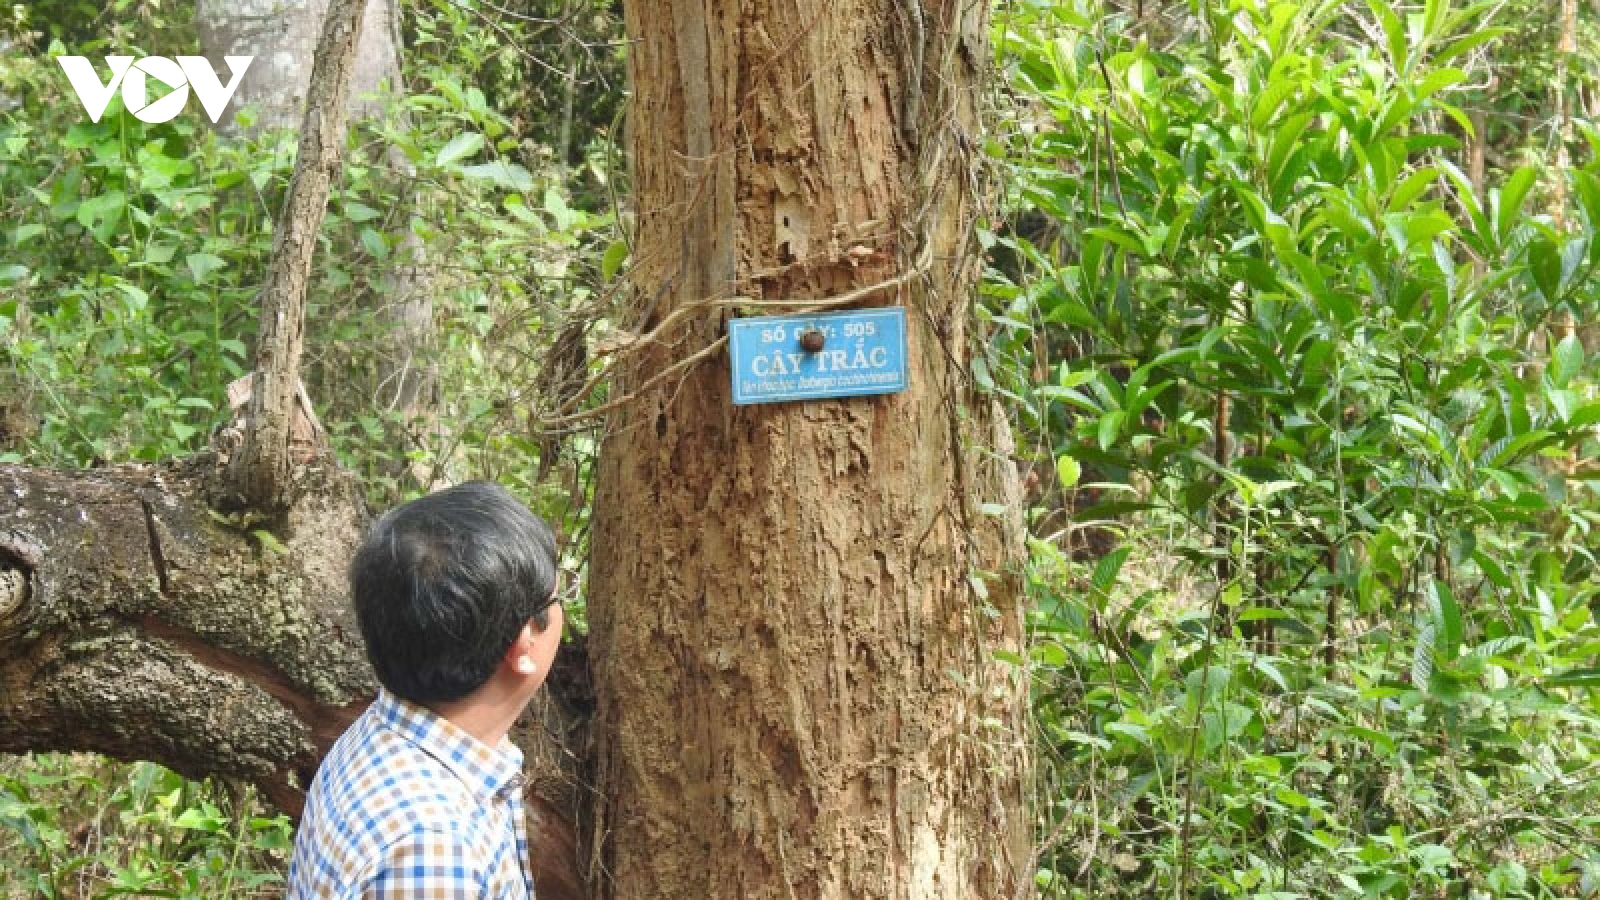 Gỗ trắc chết khô trong rừng: Cả tỉnh Kon Tum chưa biết xử lý thế nào